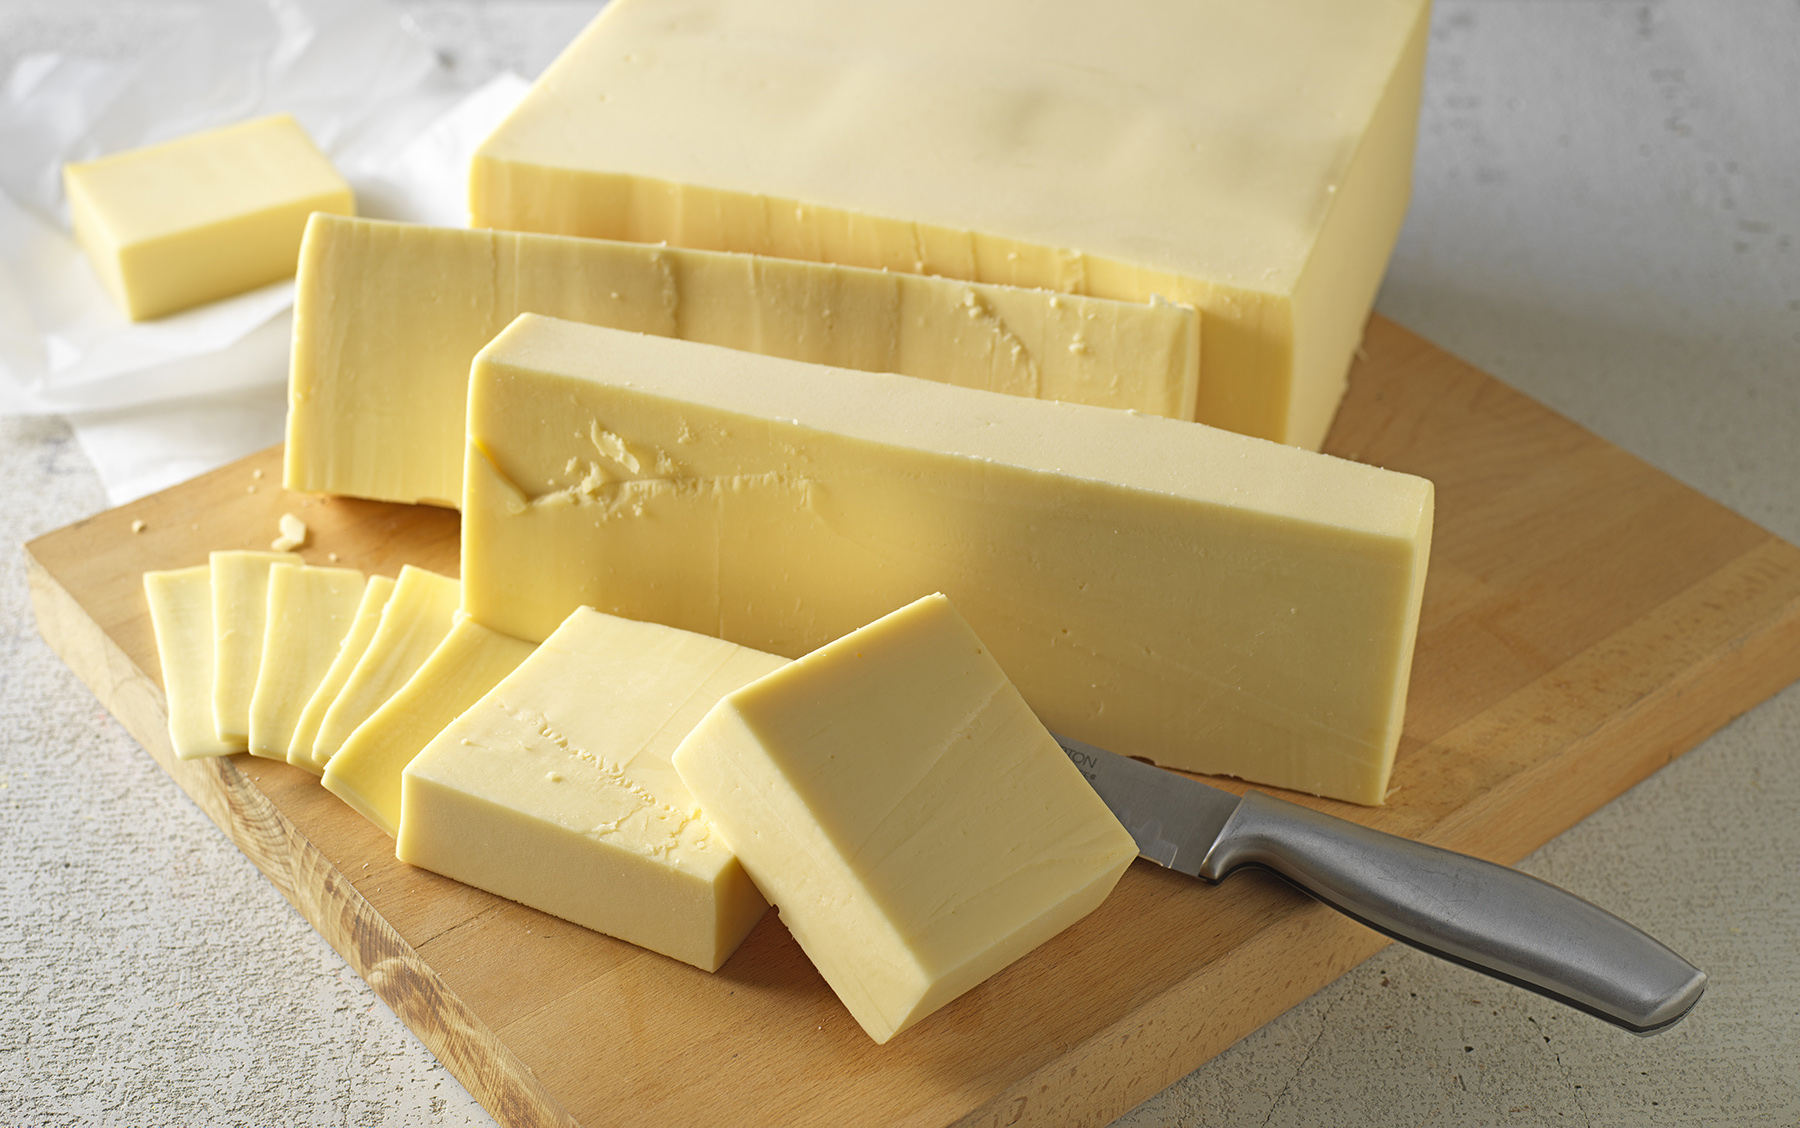 Cheese Blocks